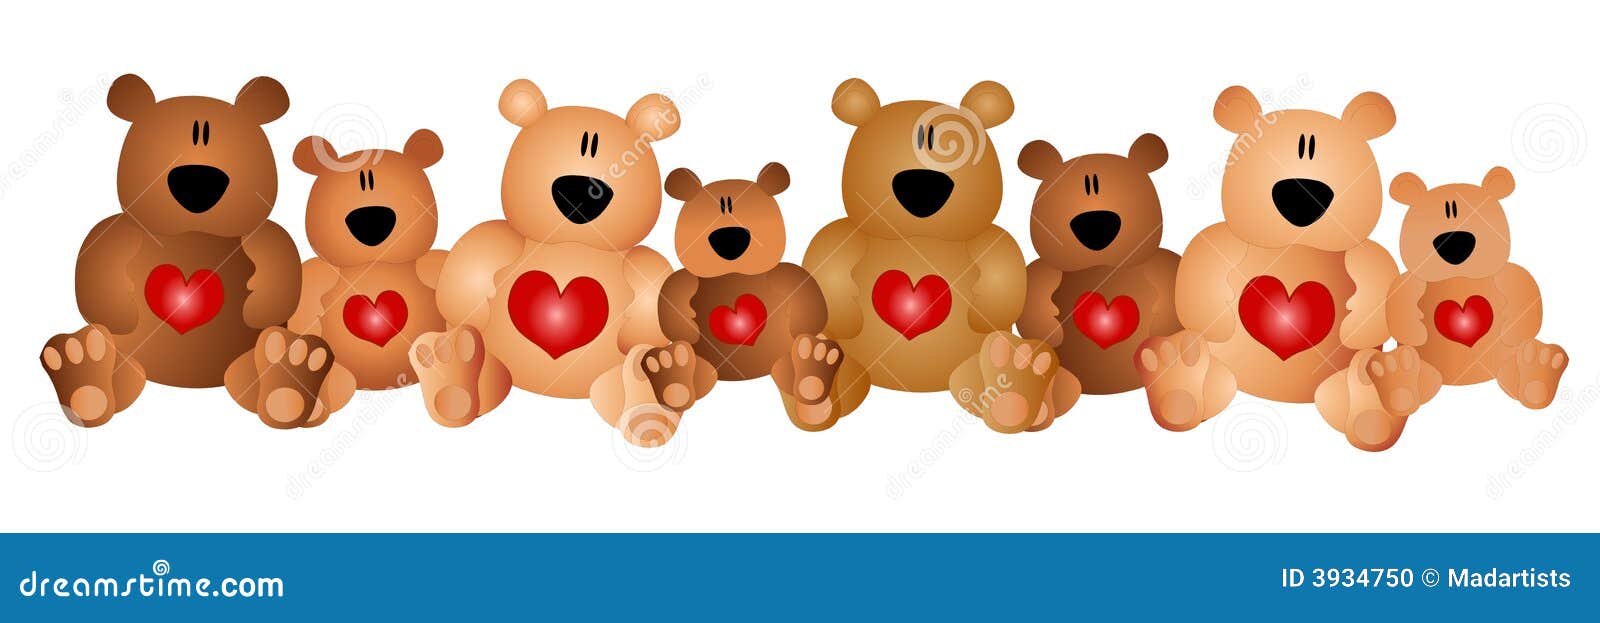 row of cute teddy bears with hearts